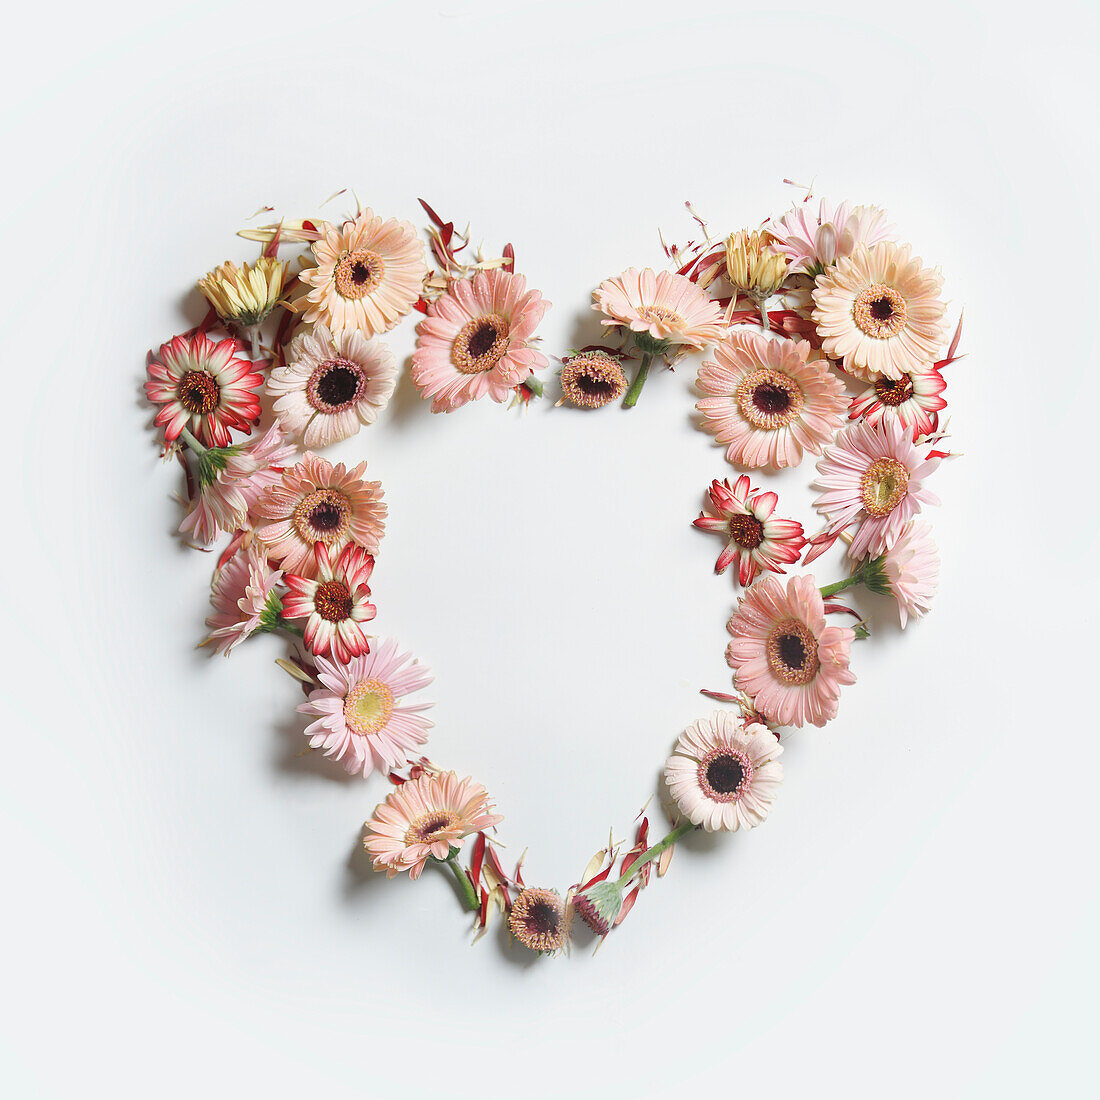 Herzrahmen mit verschiedenen Gartenblumen auf weißem Hintergrund. Romantisches Konzept mit Frühlings- und Sommerblumen für Valentinstag oder Muttertag. Ansicht von oben